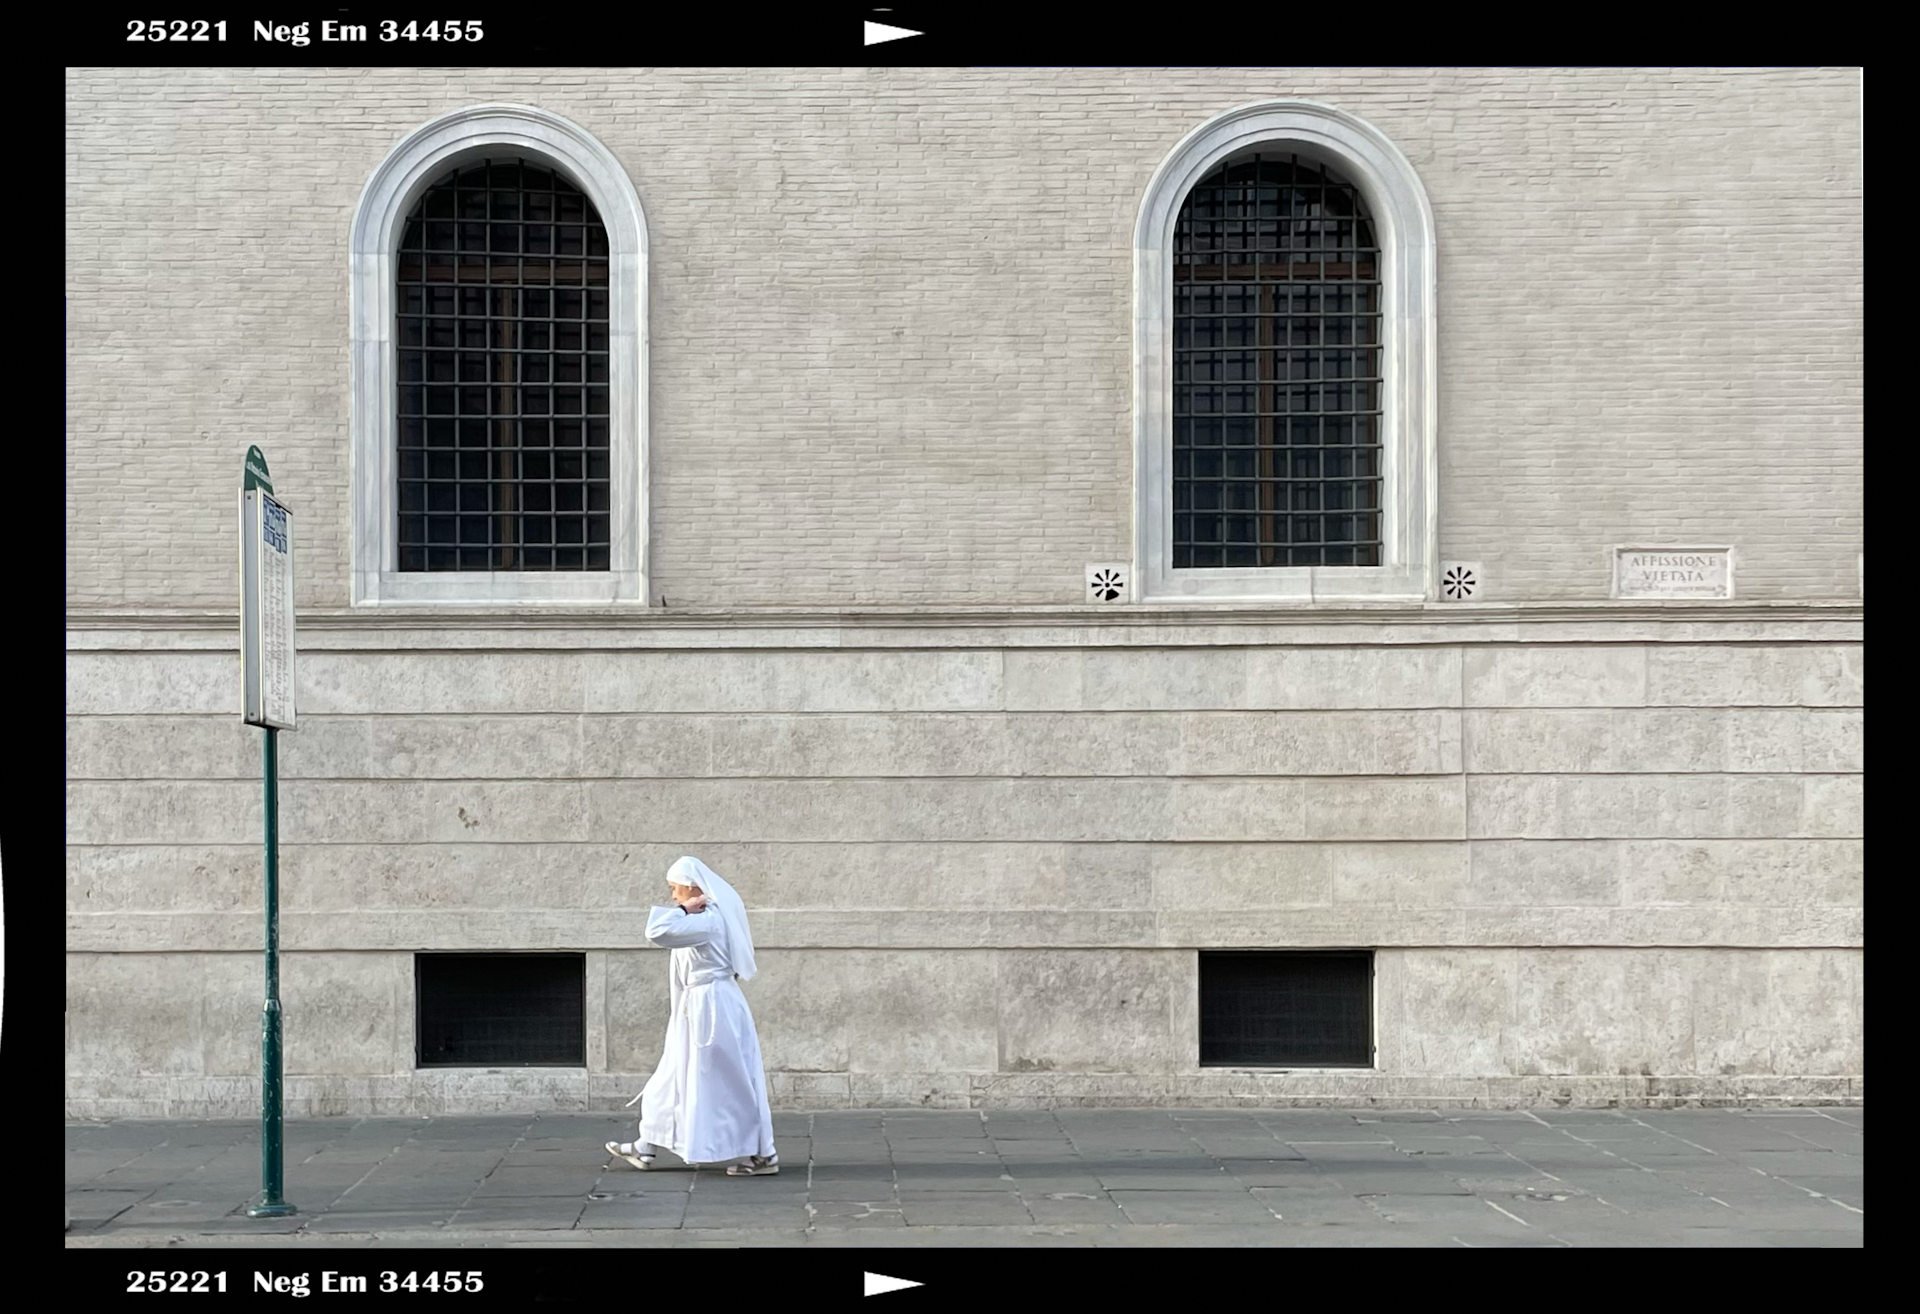 Nun walking in Rome